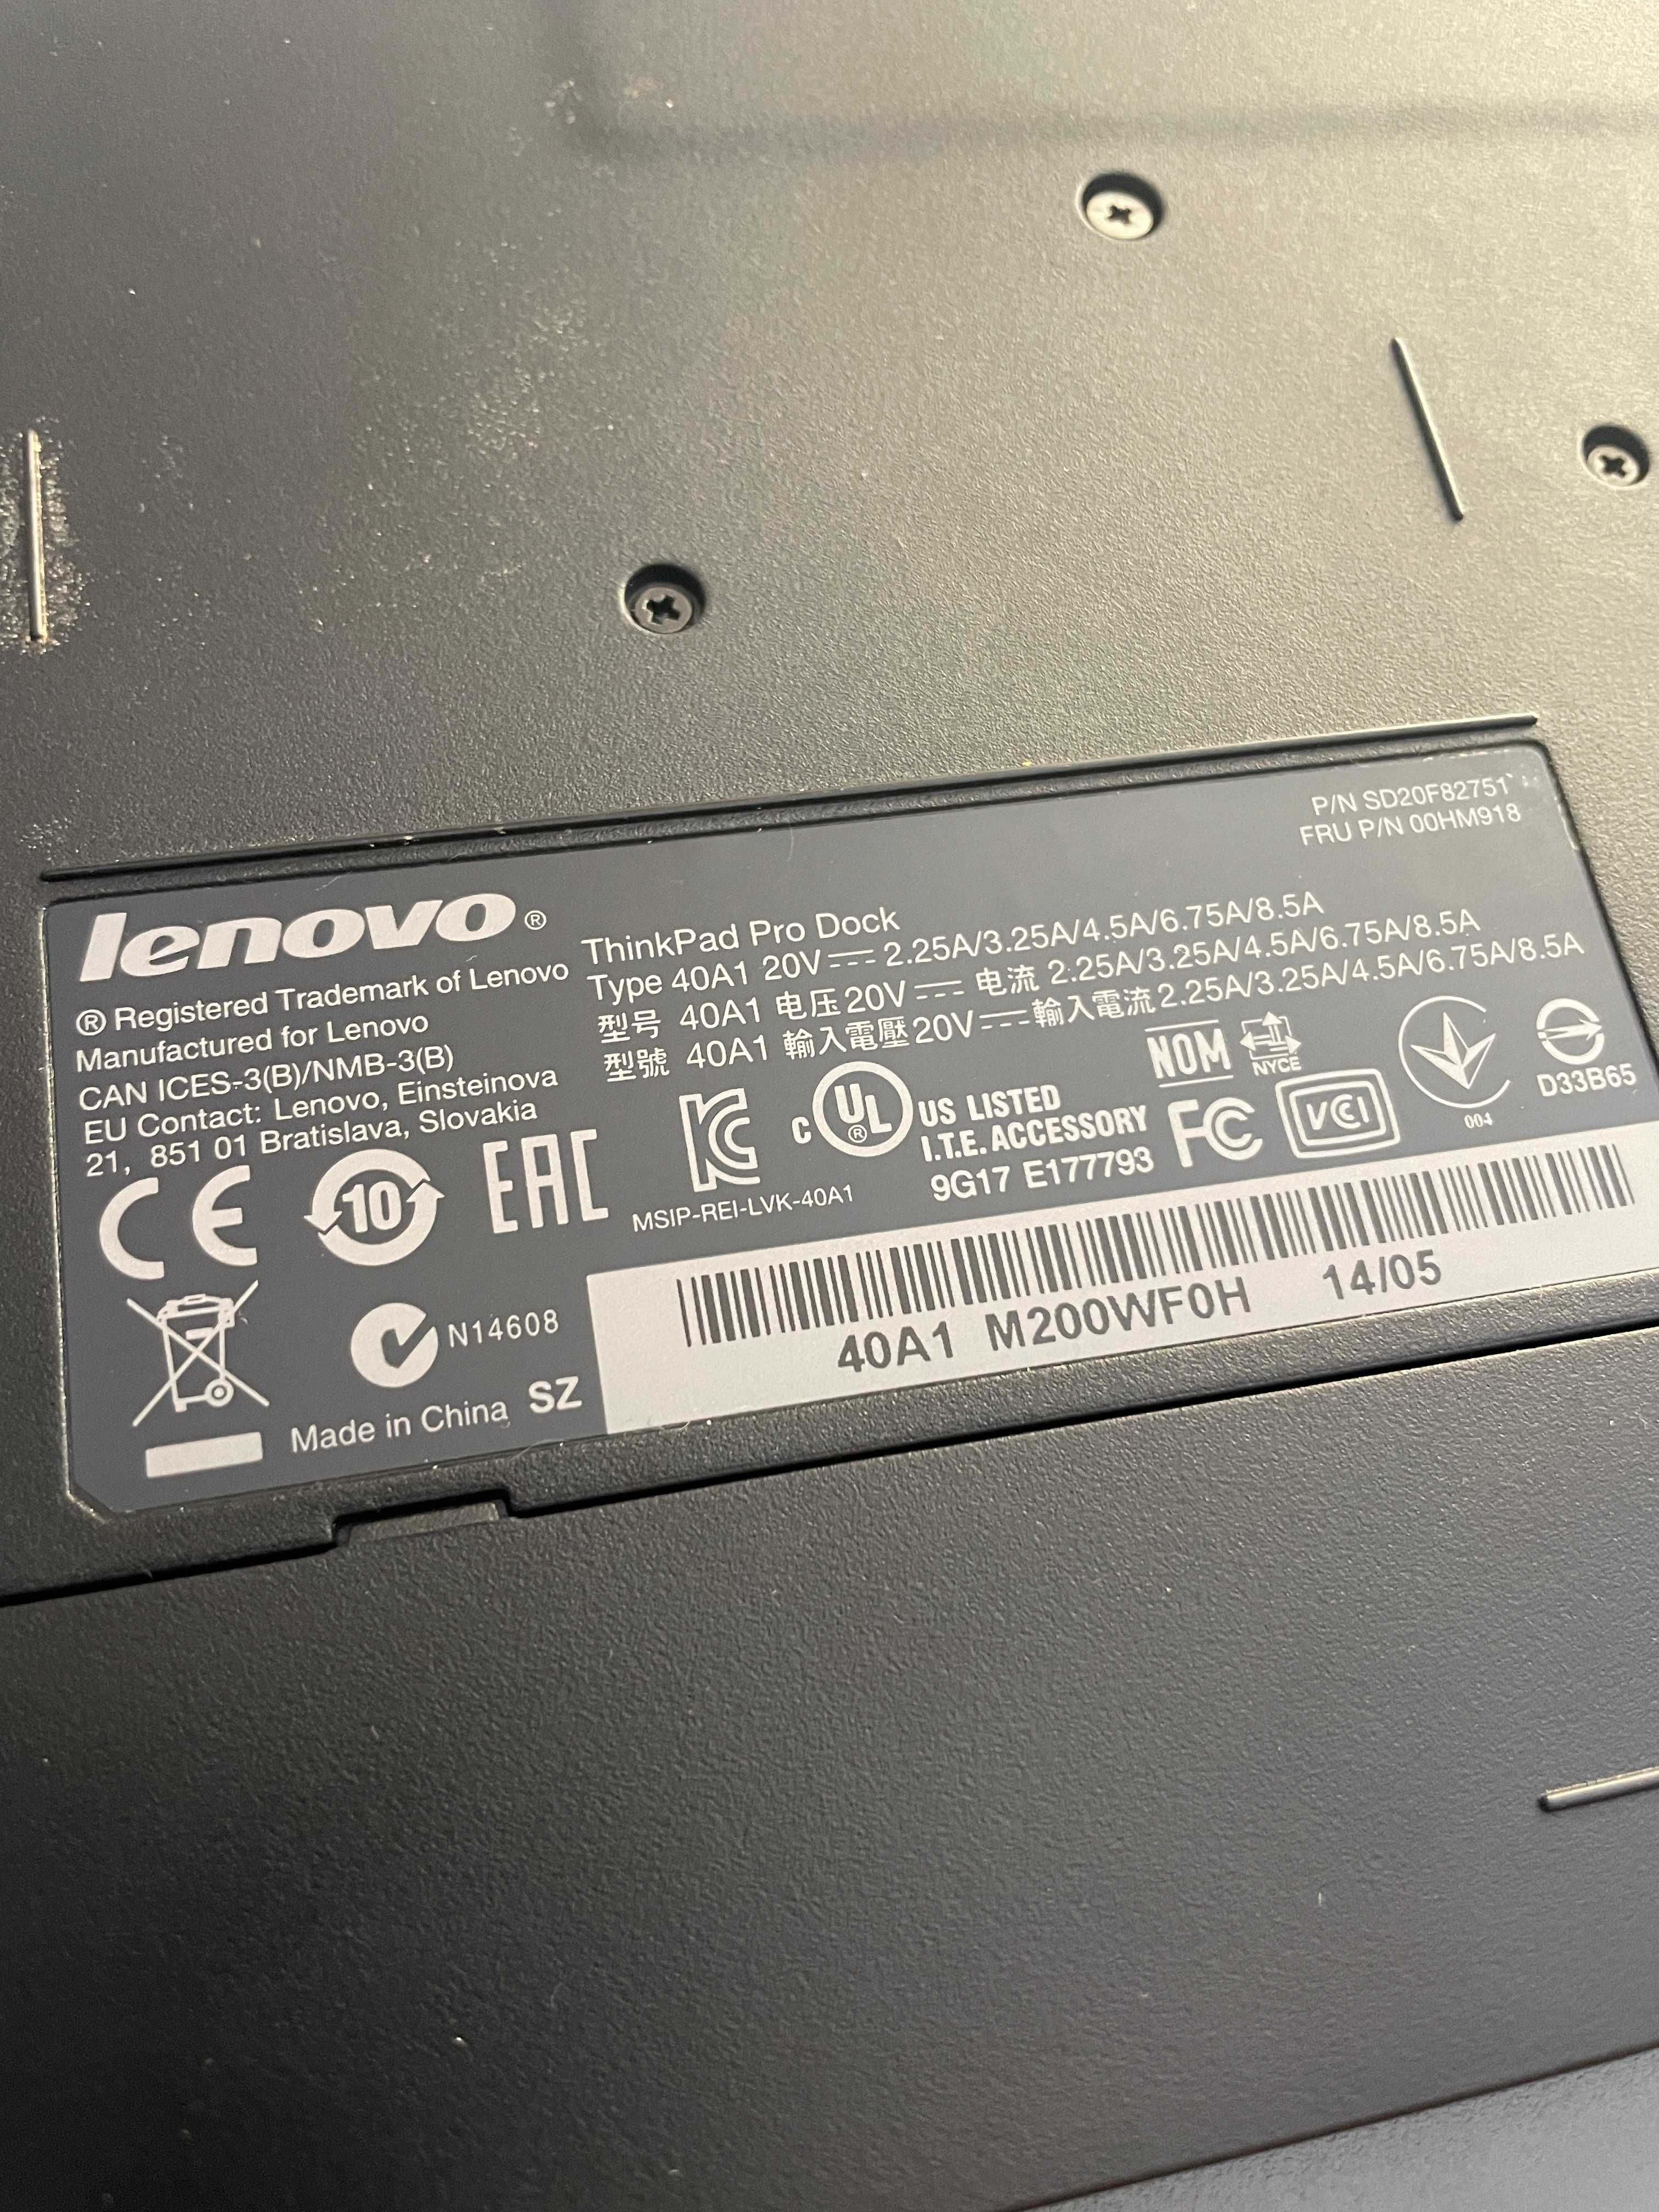 Lenovo thnkpad pro docking station 40A1 20V 8.5A putin folosit